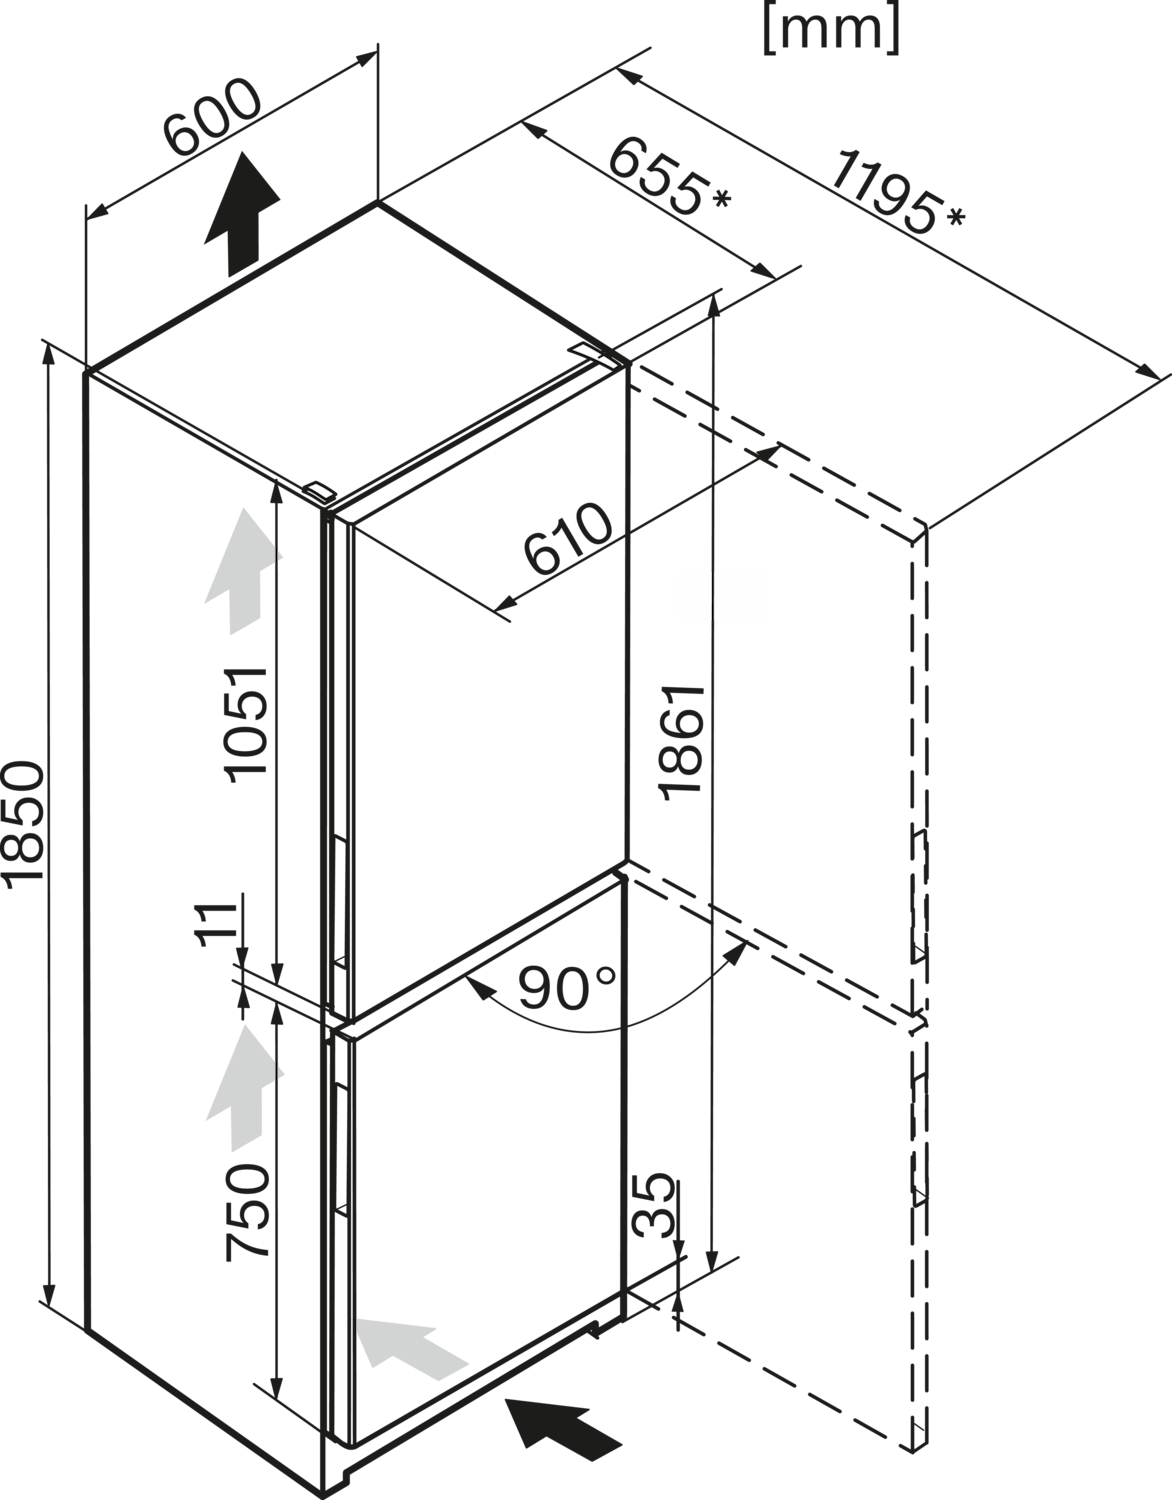 Baltas šaldytuvas su šaldikliu ir DynaCool funkcija, aukštis 1.86m (KFN 28132 D) product photo View41 ZOOM